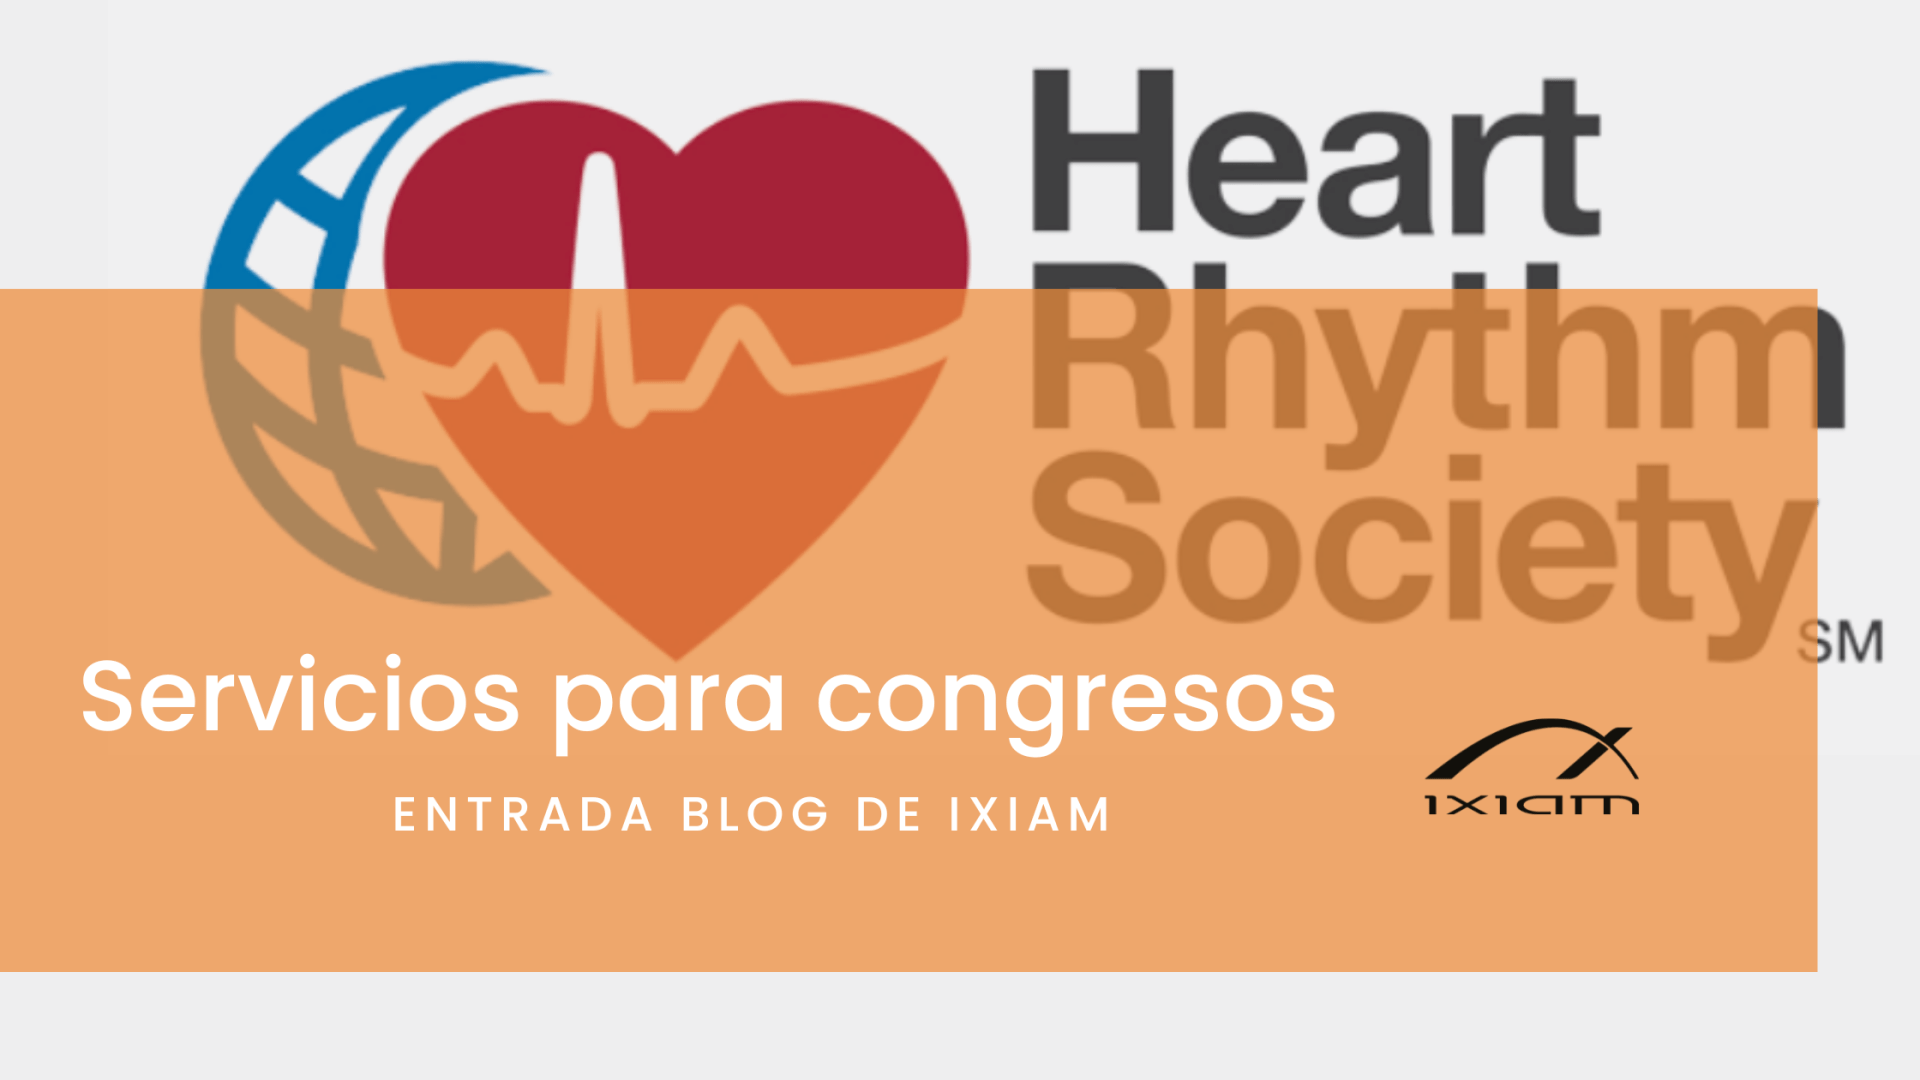 Te contamos sobre el servicio de captura de material digital en el congreso de la asociación americana heart rythim